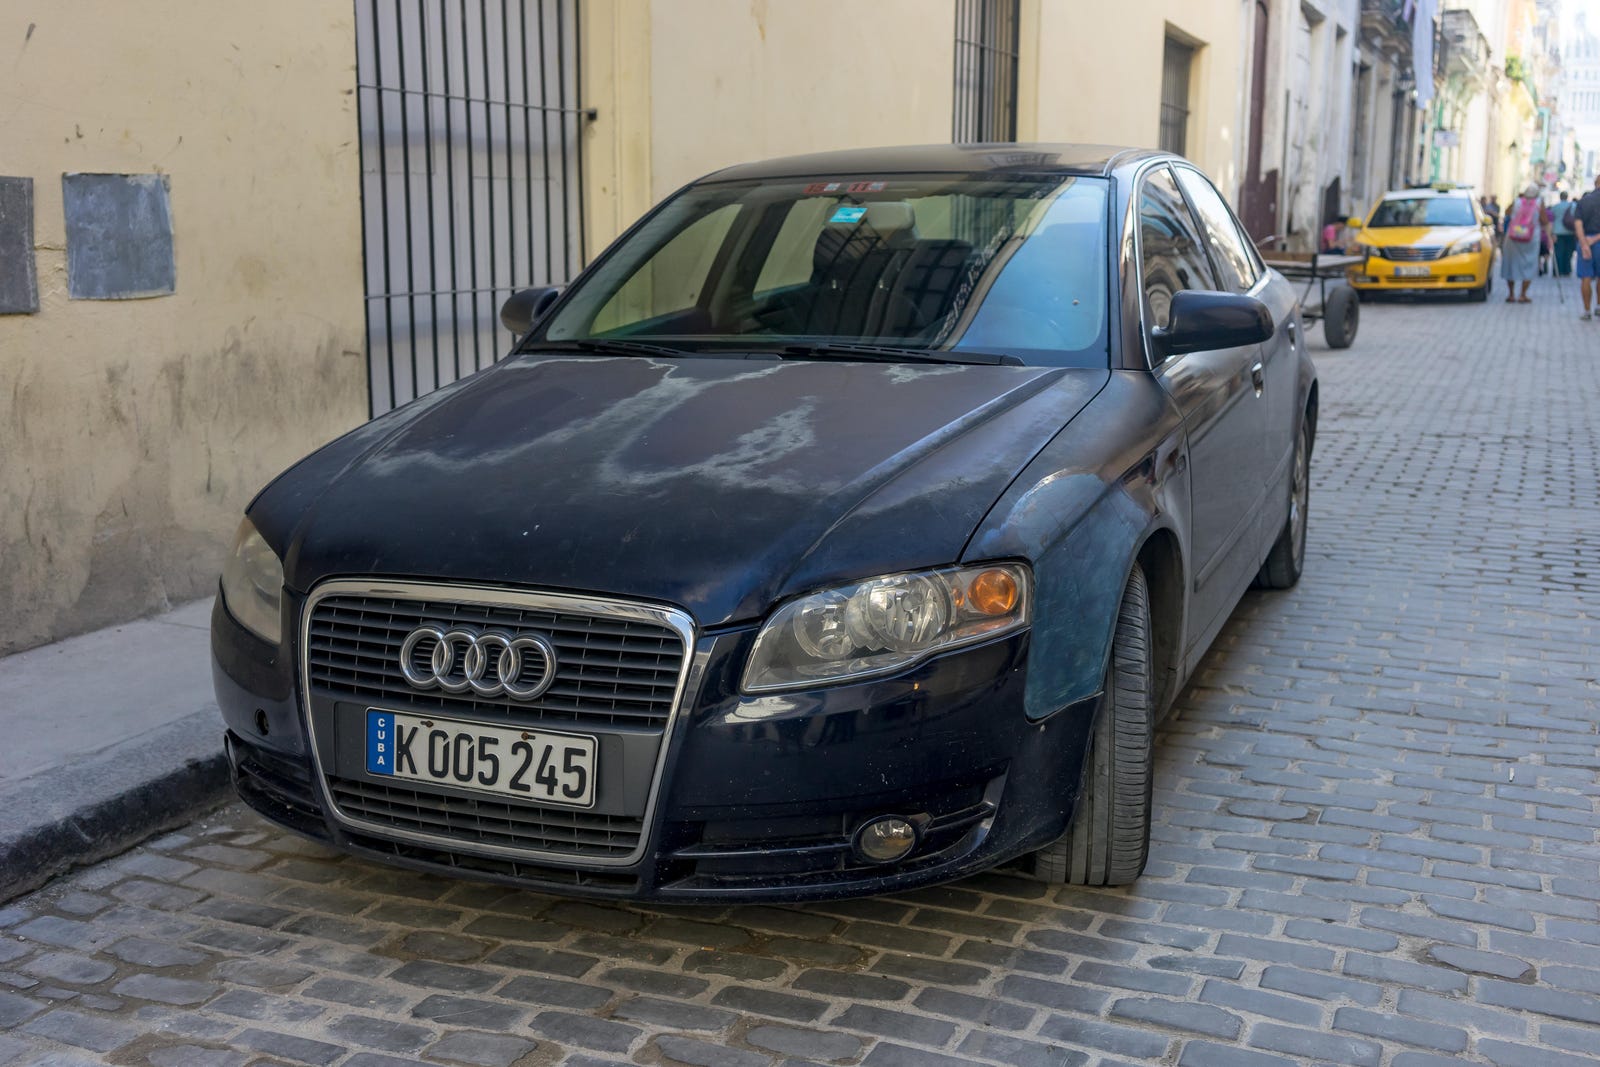 Inilah Pemandangan Mobil Kuba Yang Seperti Di 2017